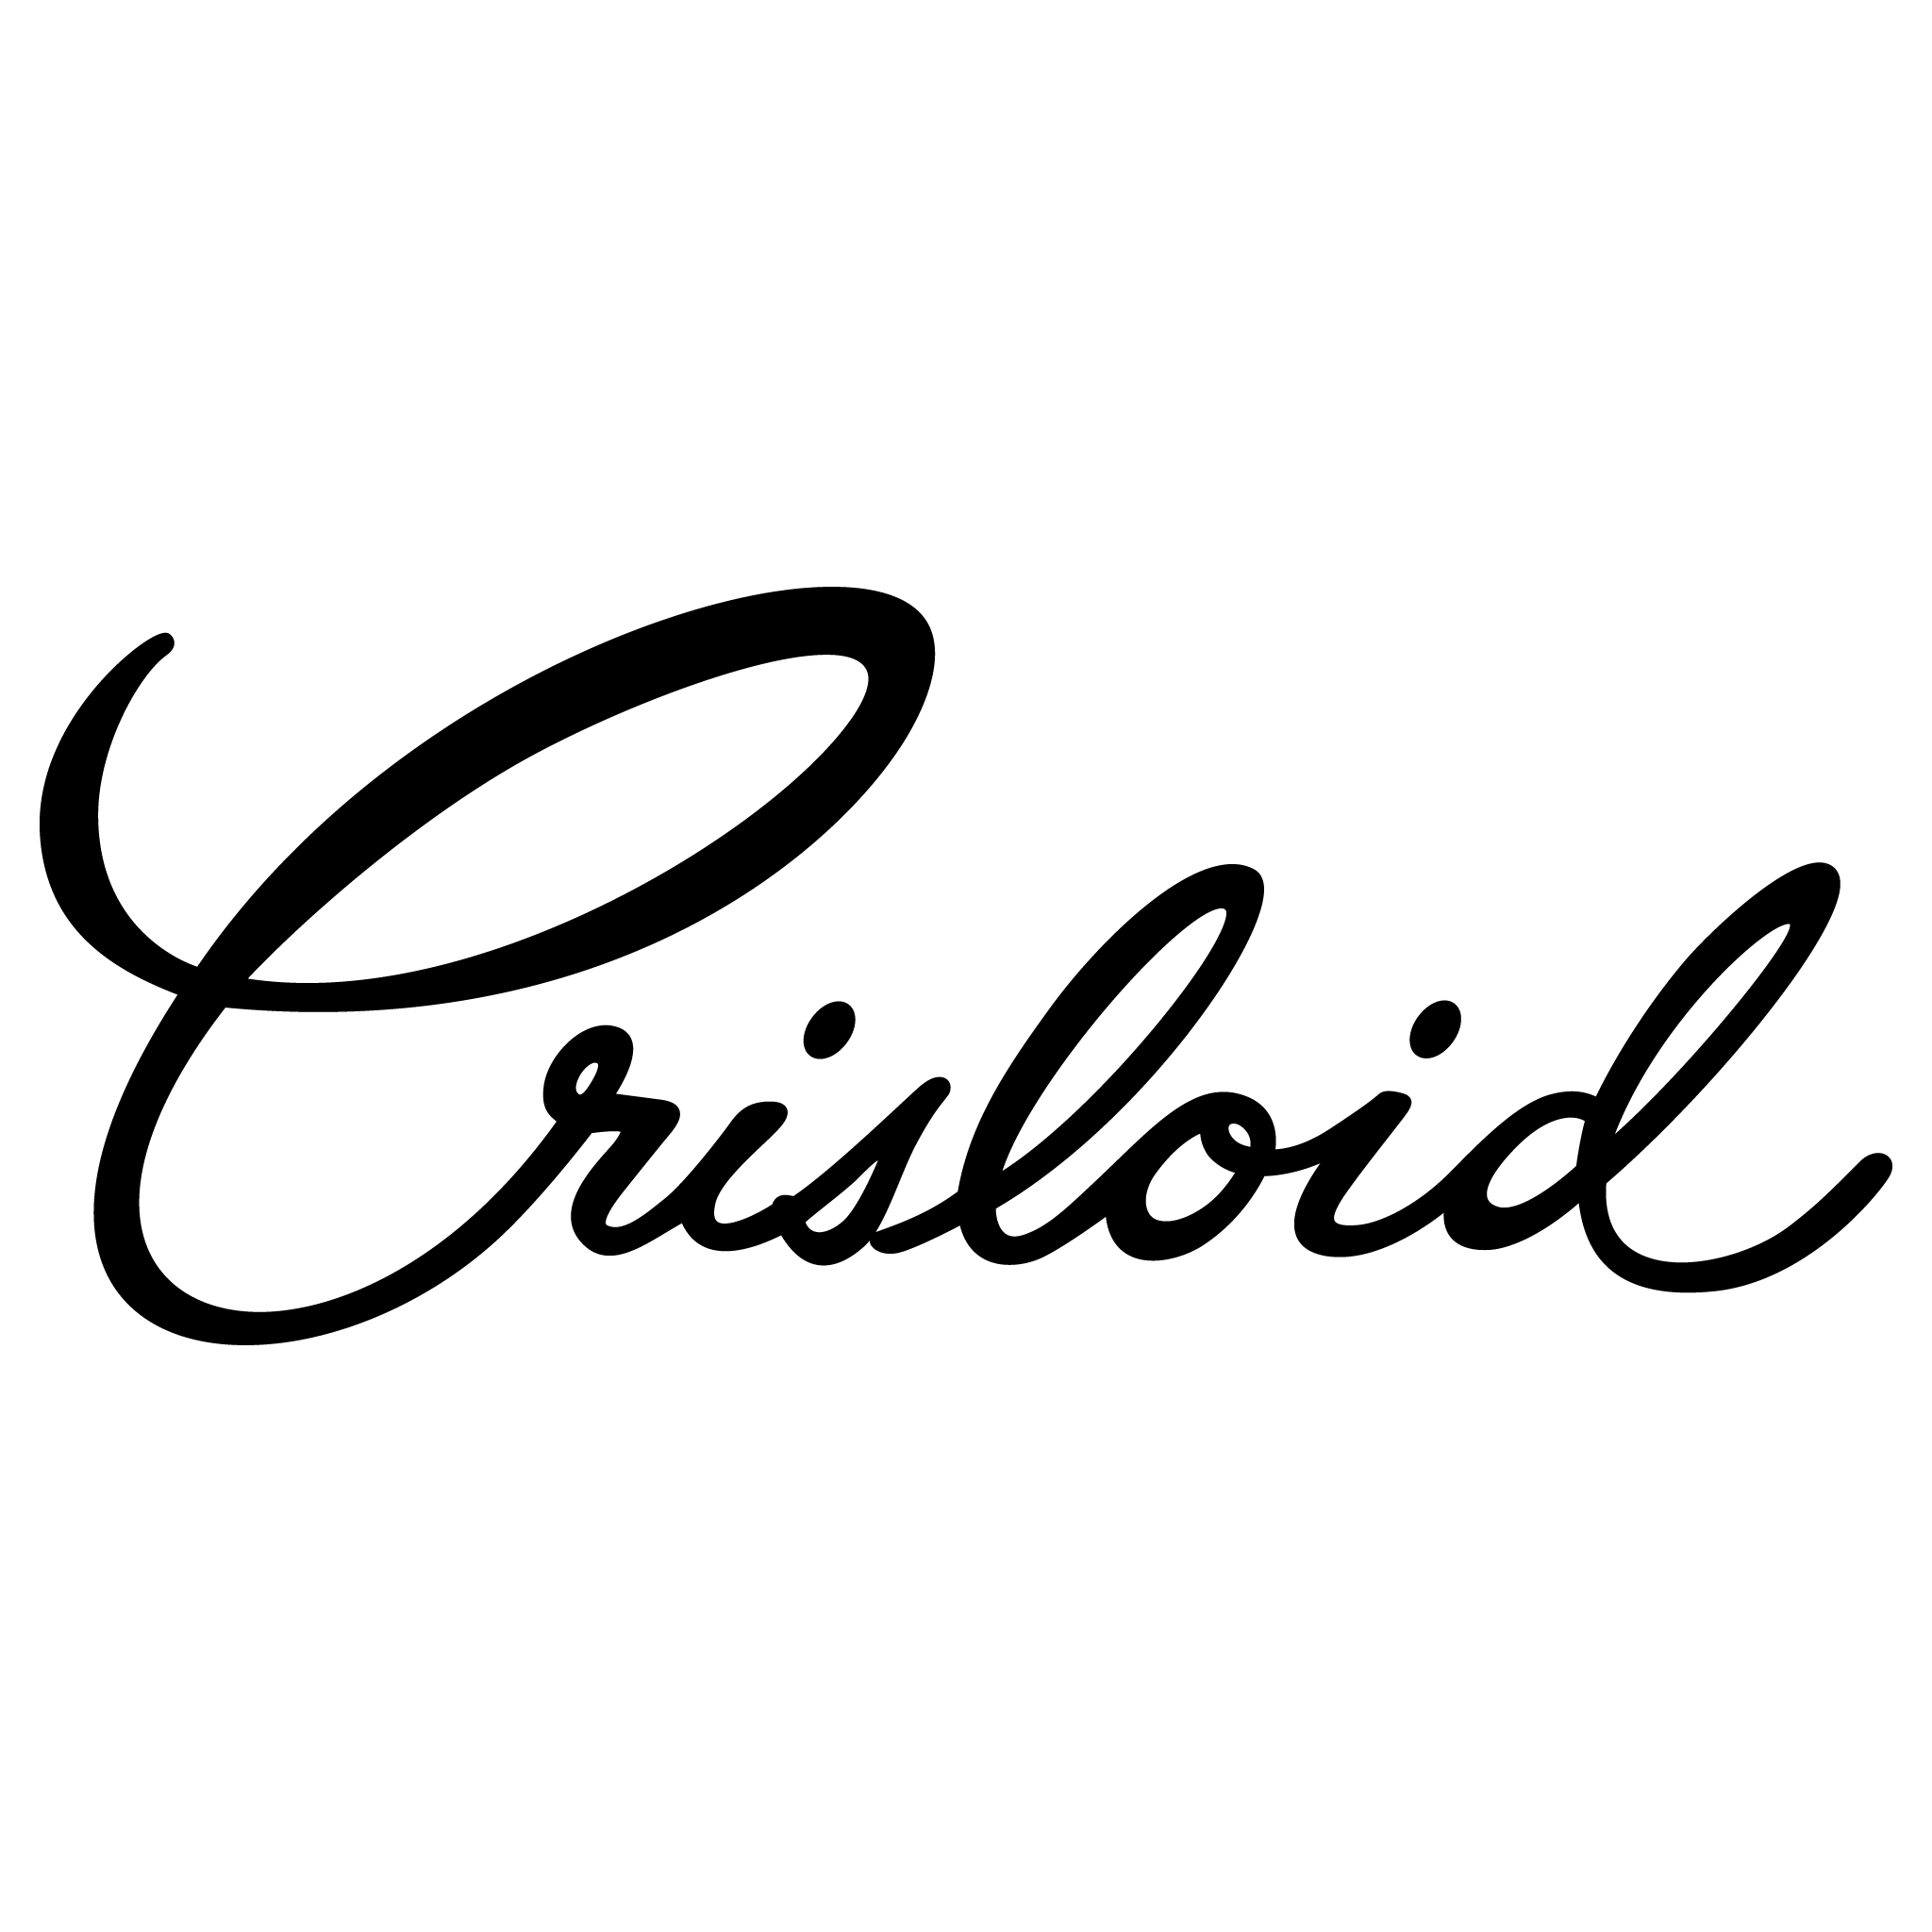 Crisloid